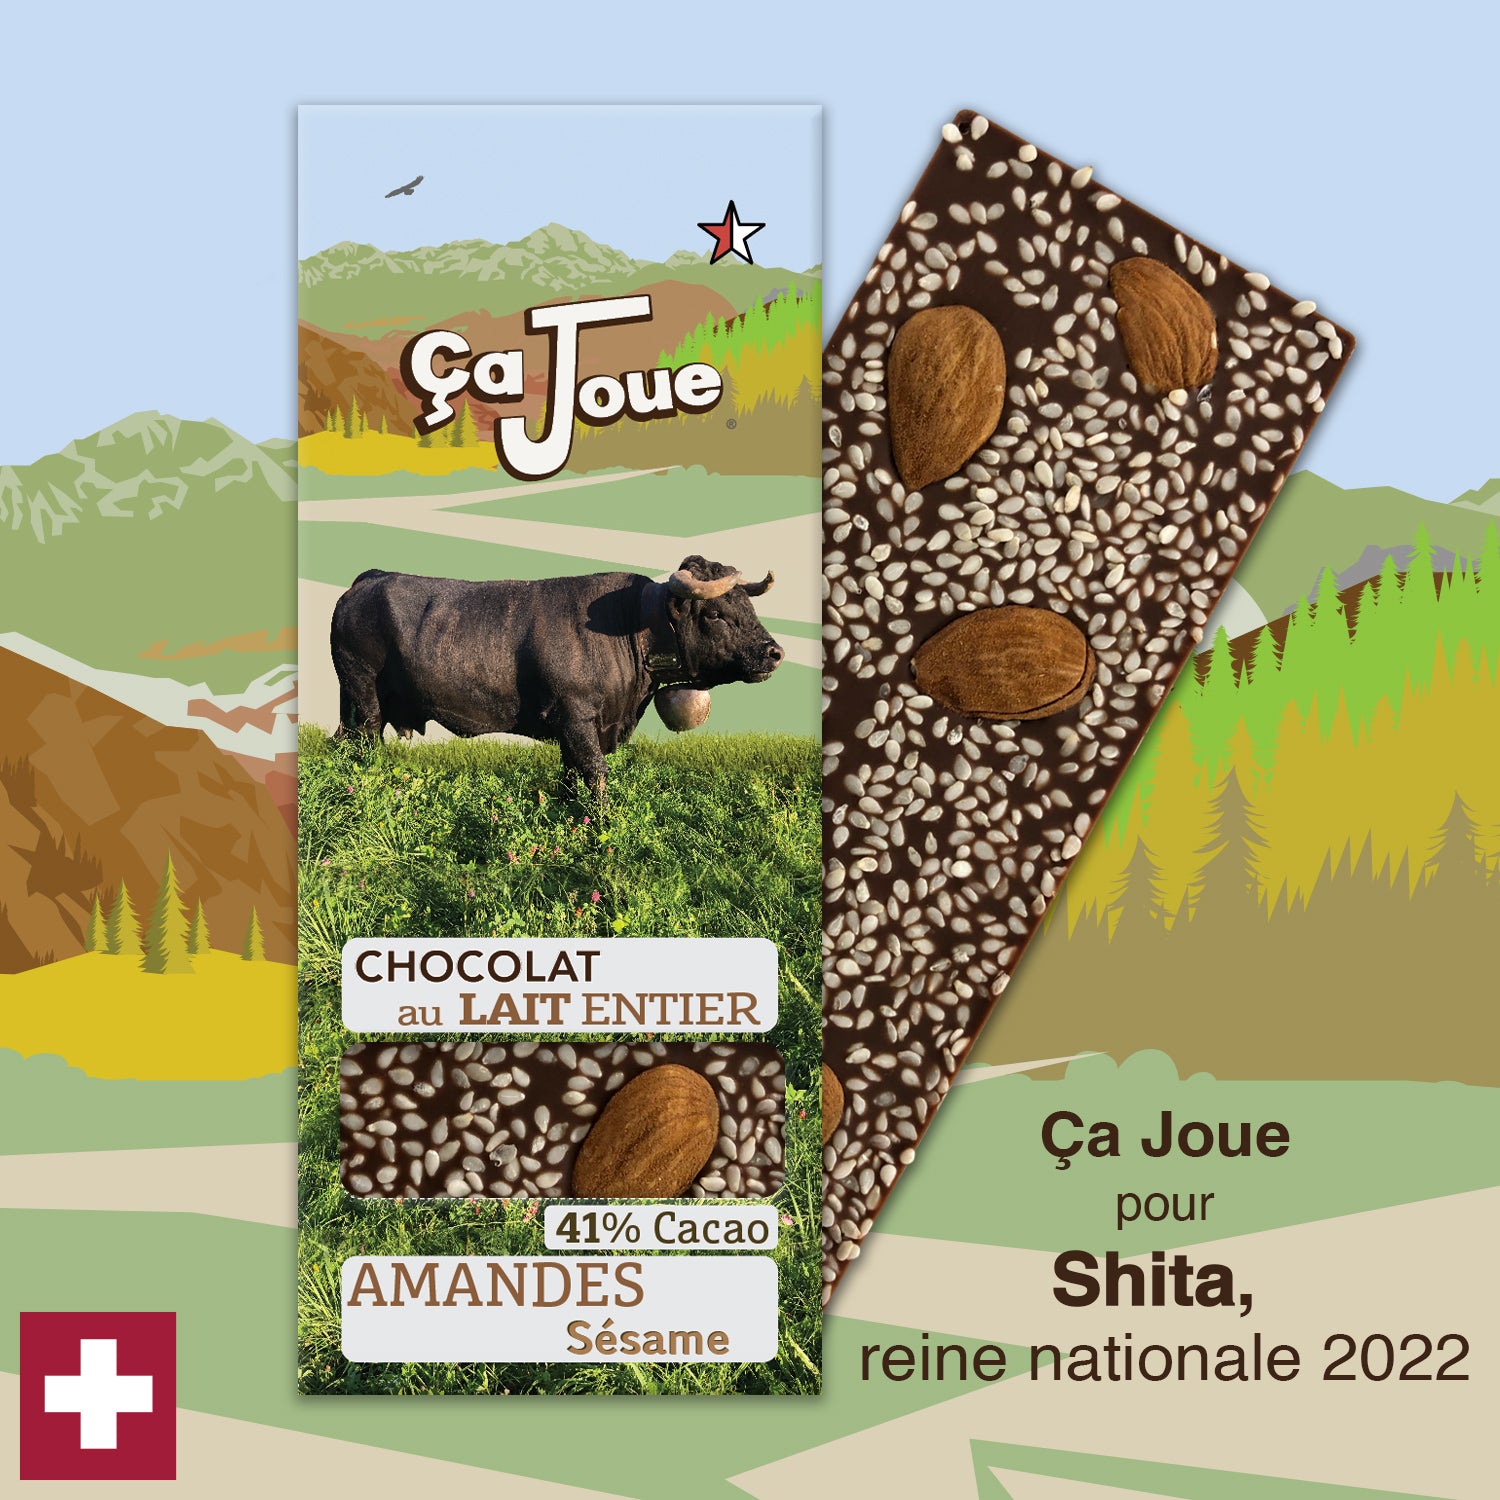 Ça Joue for Queen Shita (Ref-BL11) Milk Chocolate from Val de Bagnes